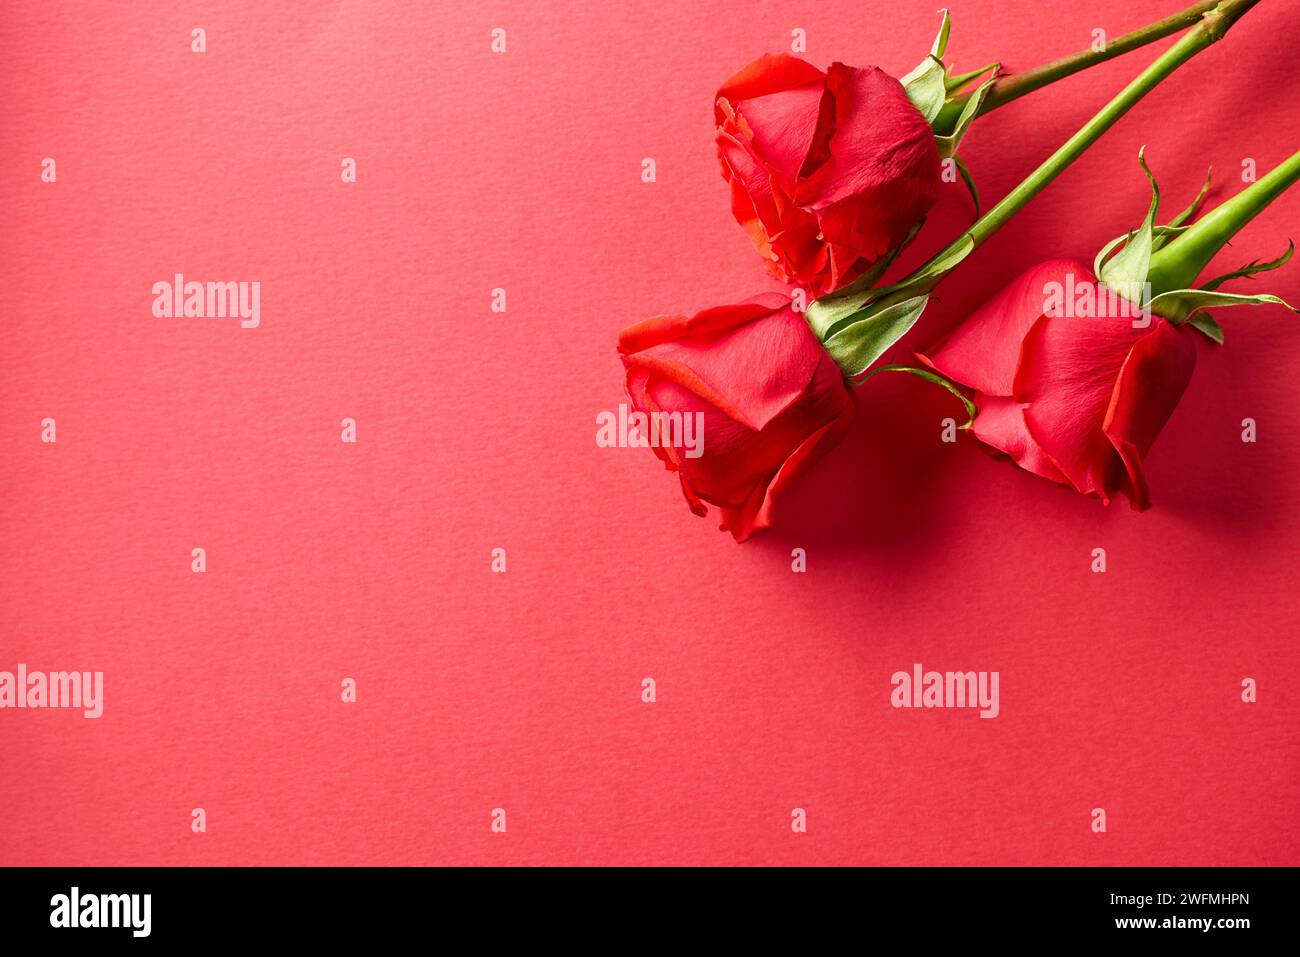 Nahaufnahme von drei roten Rosen Knospen auf rotem Hintergrund, Draufsicht Stockfoto